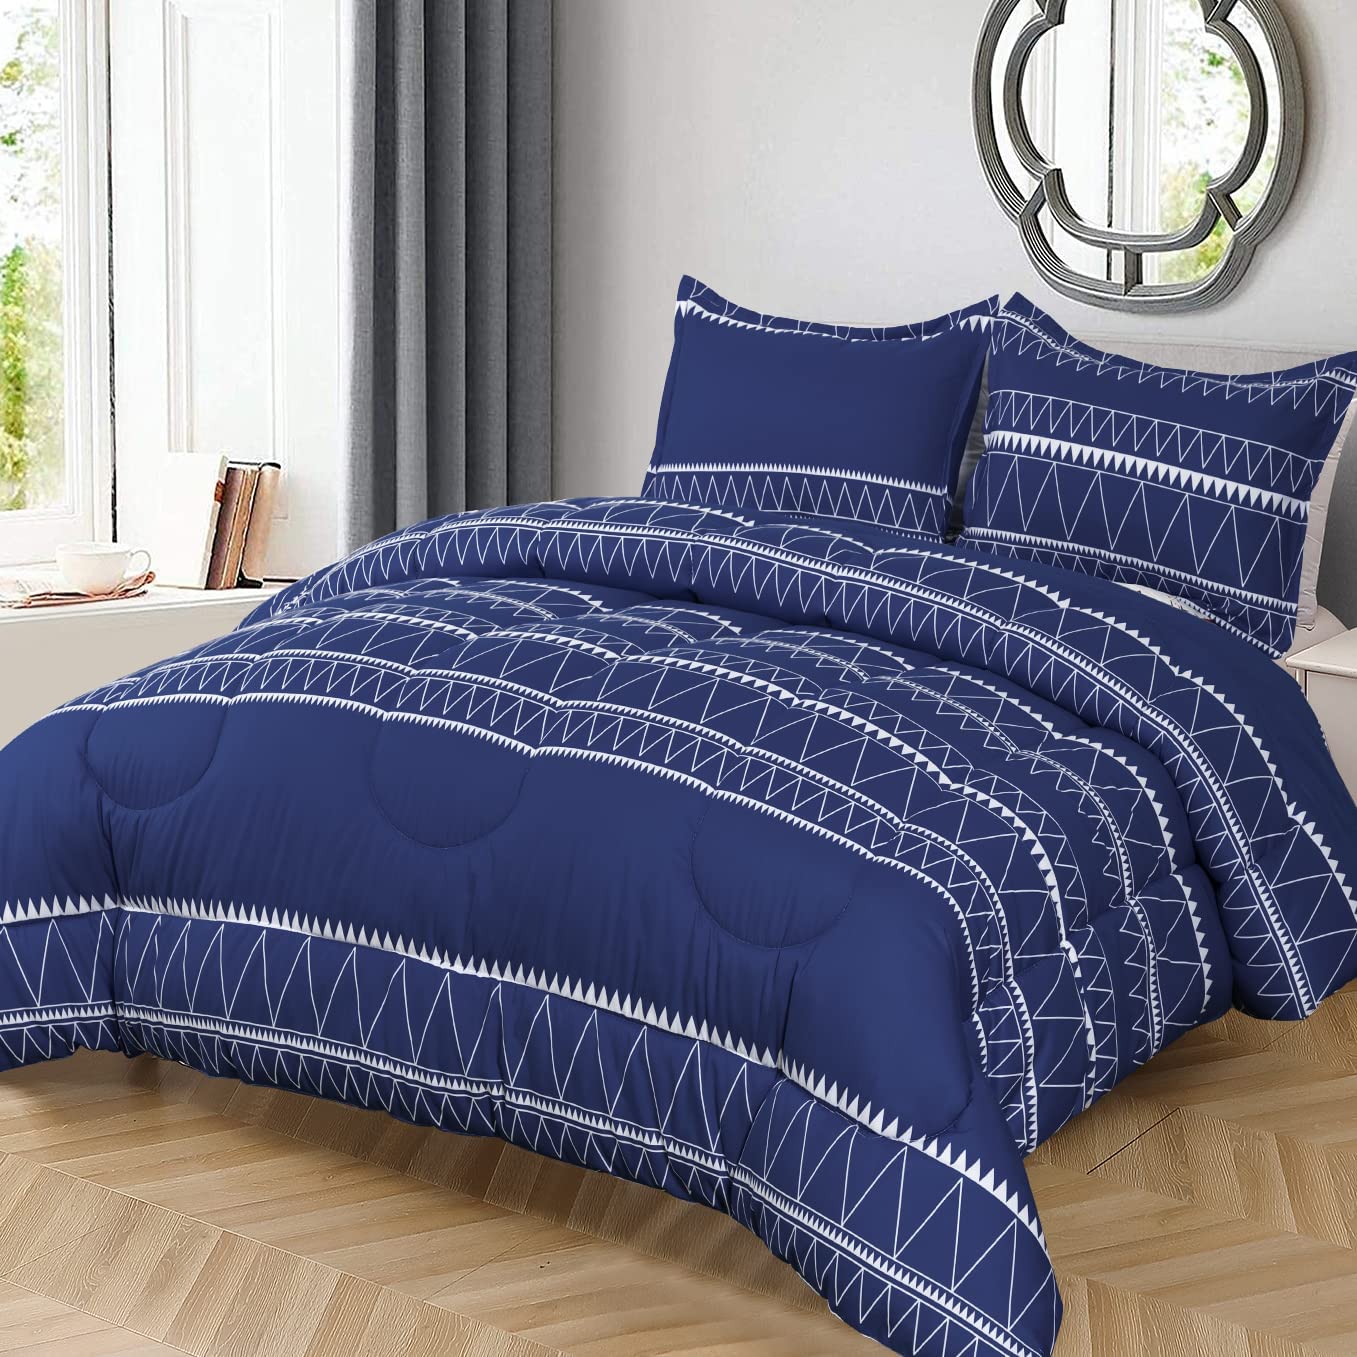 Shatex Comforter Sets Striped Comforter Set– Ultra Soft 100